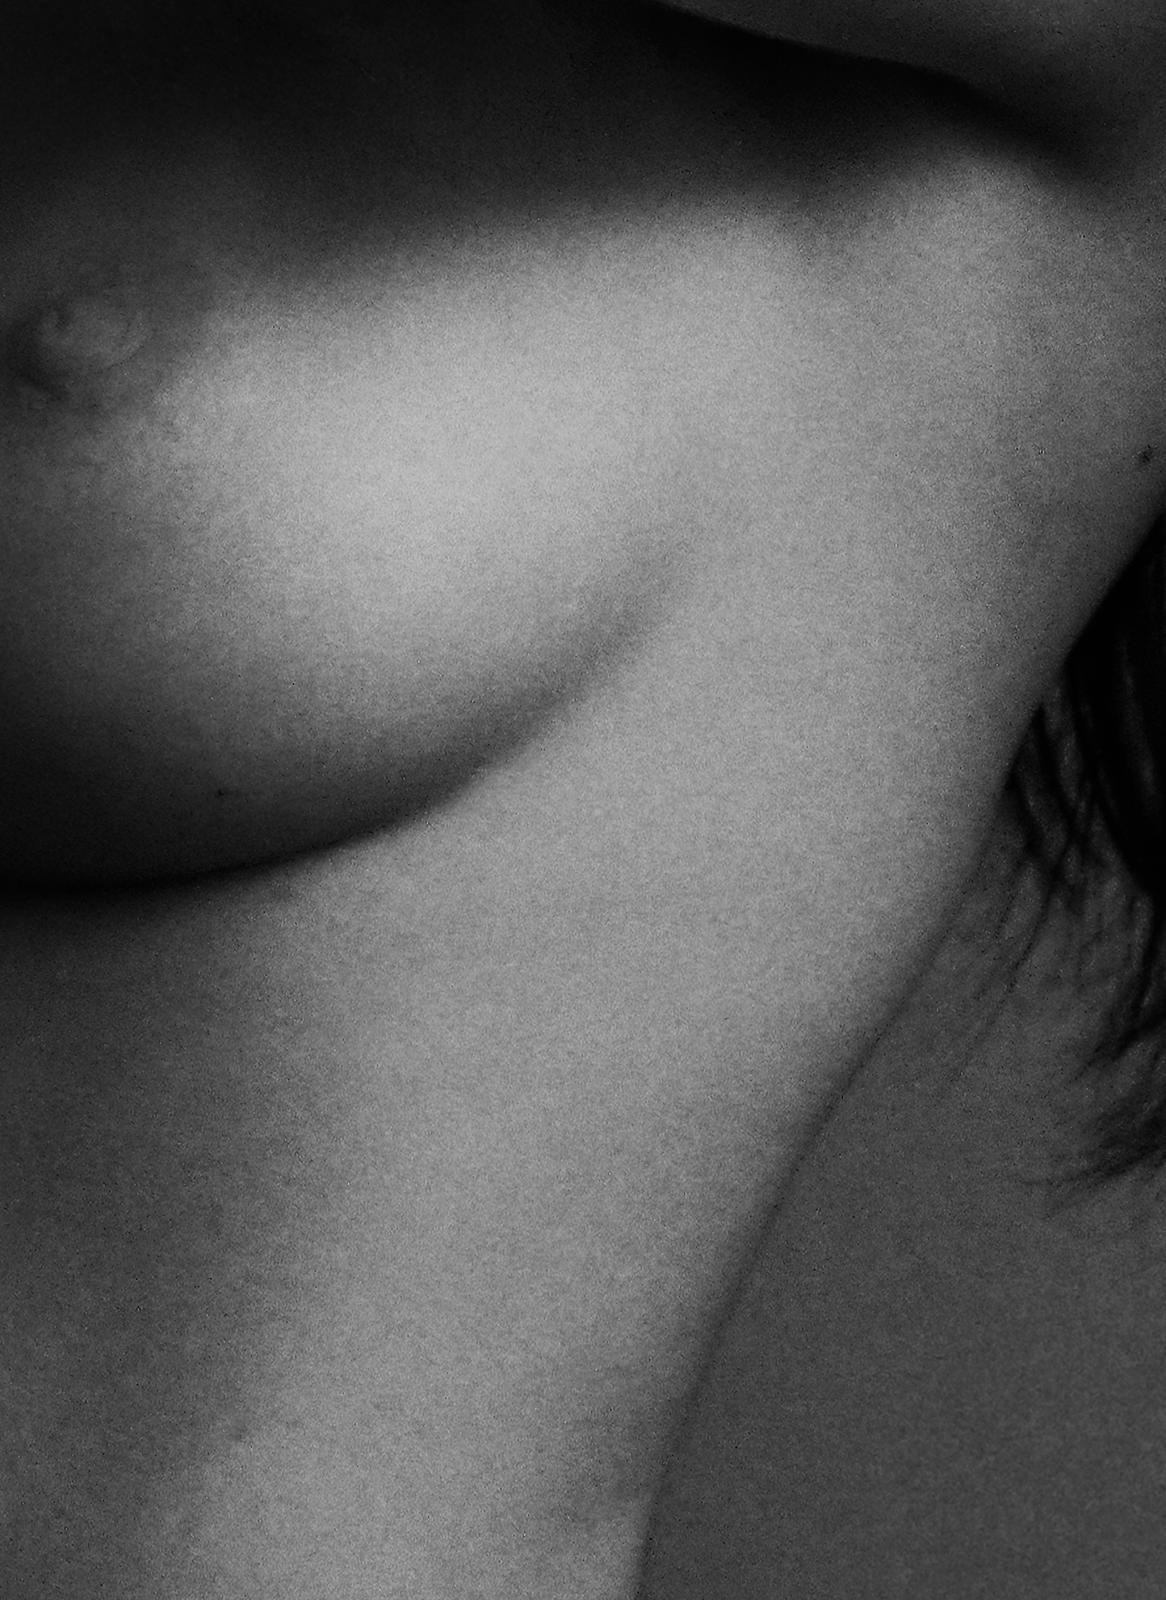 Impression de nu en édition limitée signée Sophie, photo en noir et blanc, surdimensionnée, contemporaine - Contemporain Photograph par Ian Sanderson